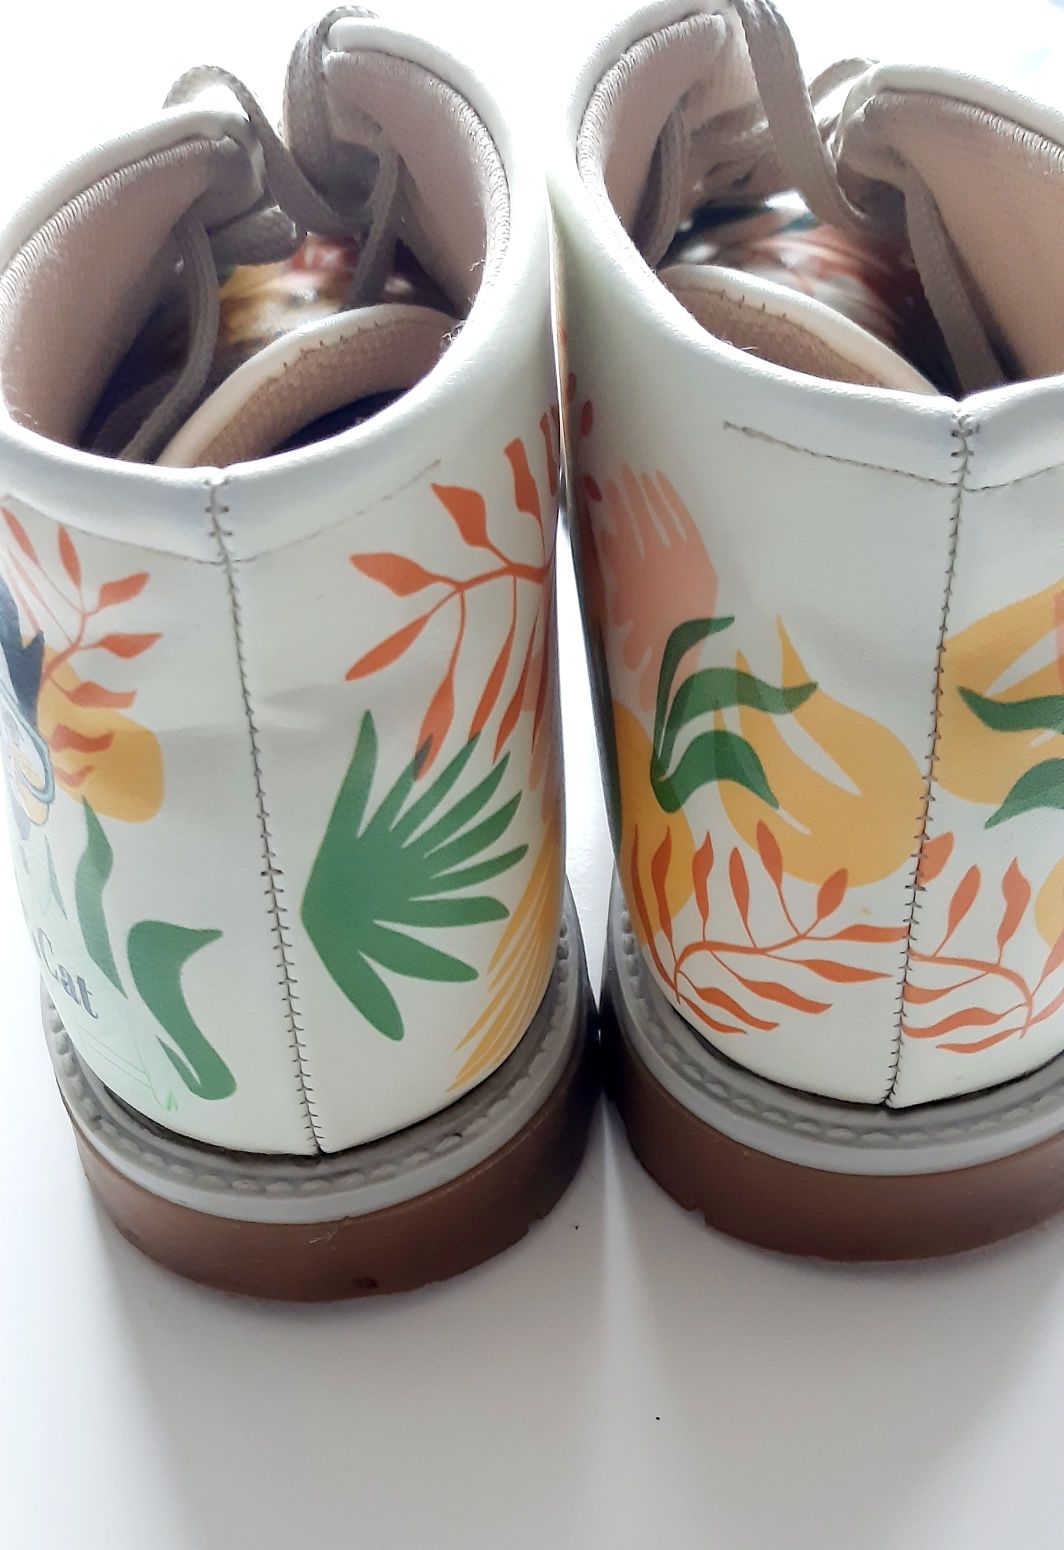 Mumka shoes buty wegańskie ekologiczne trapery workery botki